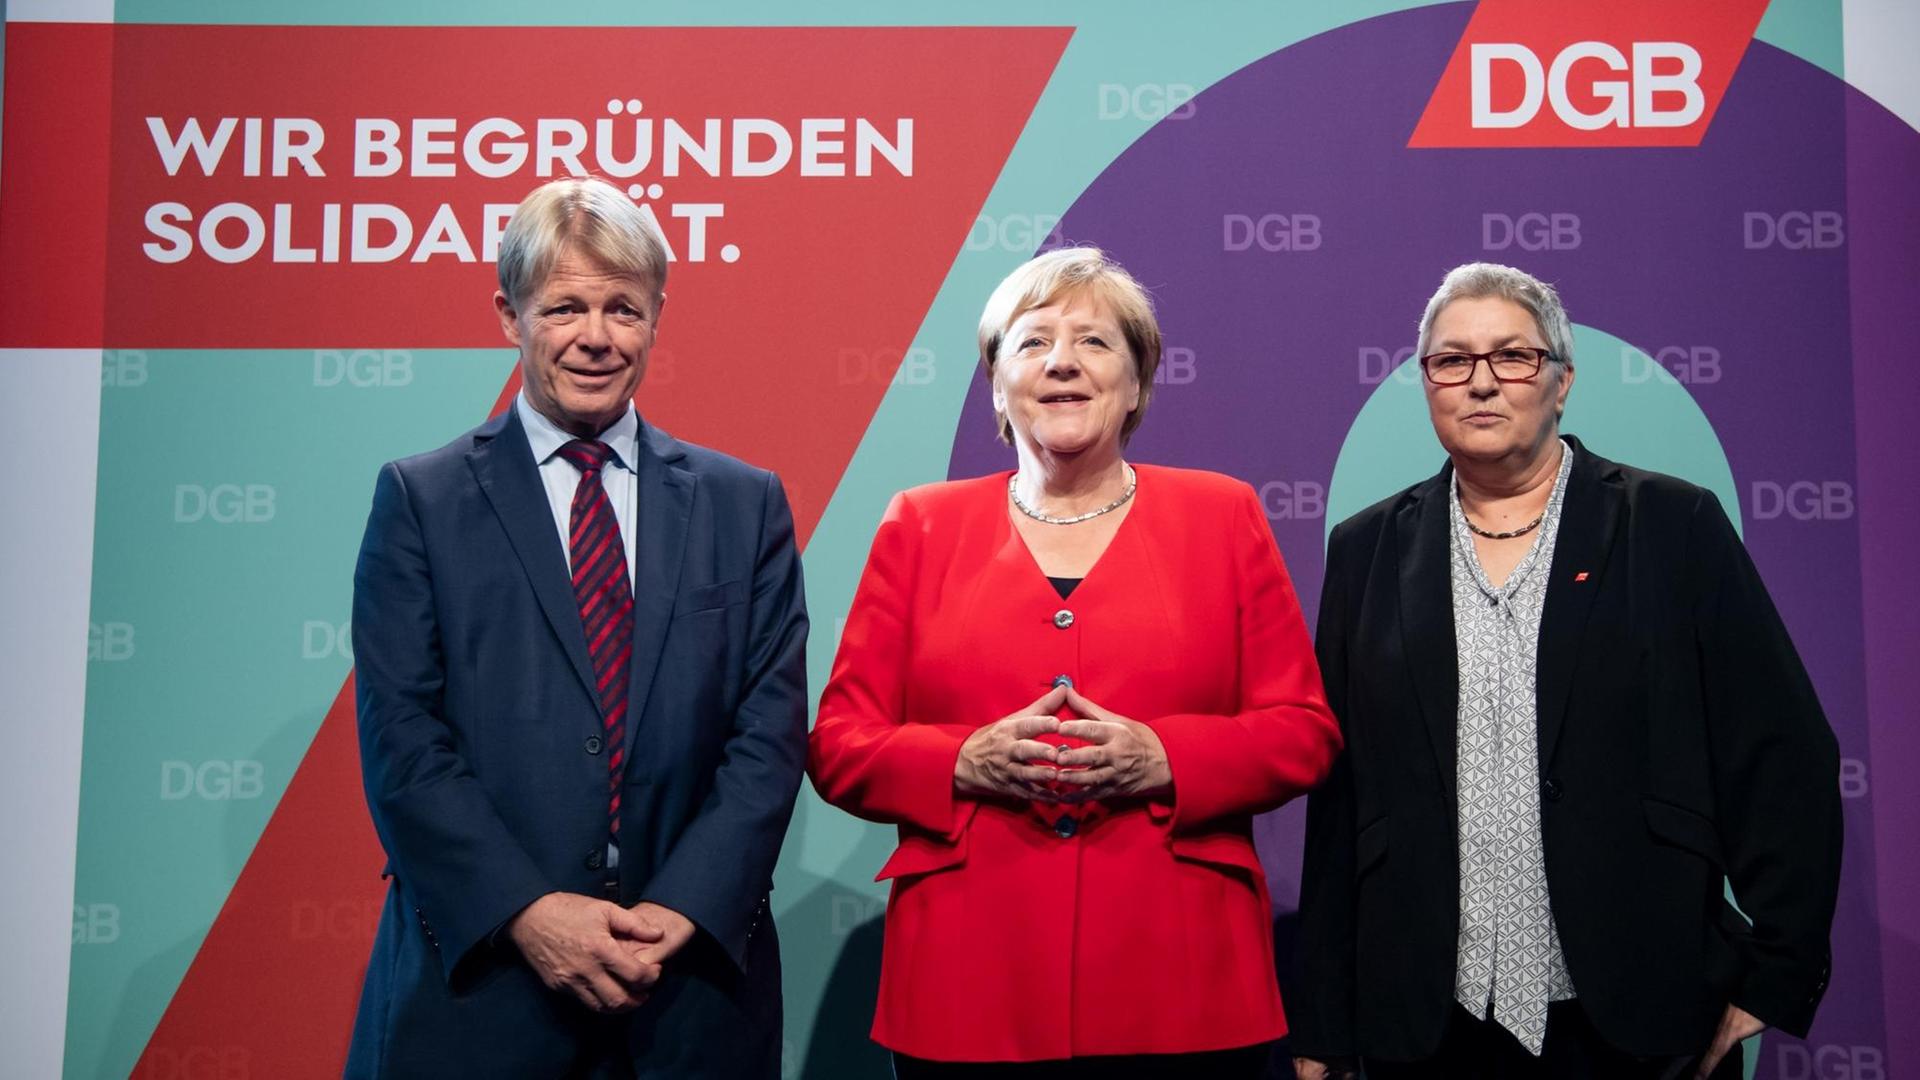 Bundeskanzlerin Angela Merkel (M, CDU) wird von Reiner Hoffmann (l), DGB-Vorsitzender, und Elke Hannack, stellvertretende DGB-Vorsitzende, beim Festakt zu 70 Jahre Deutscher Gewerkschaftsbund (DGB) begrüßt.